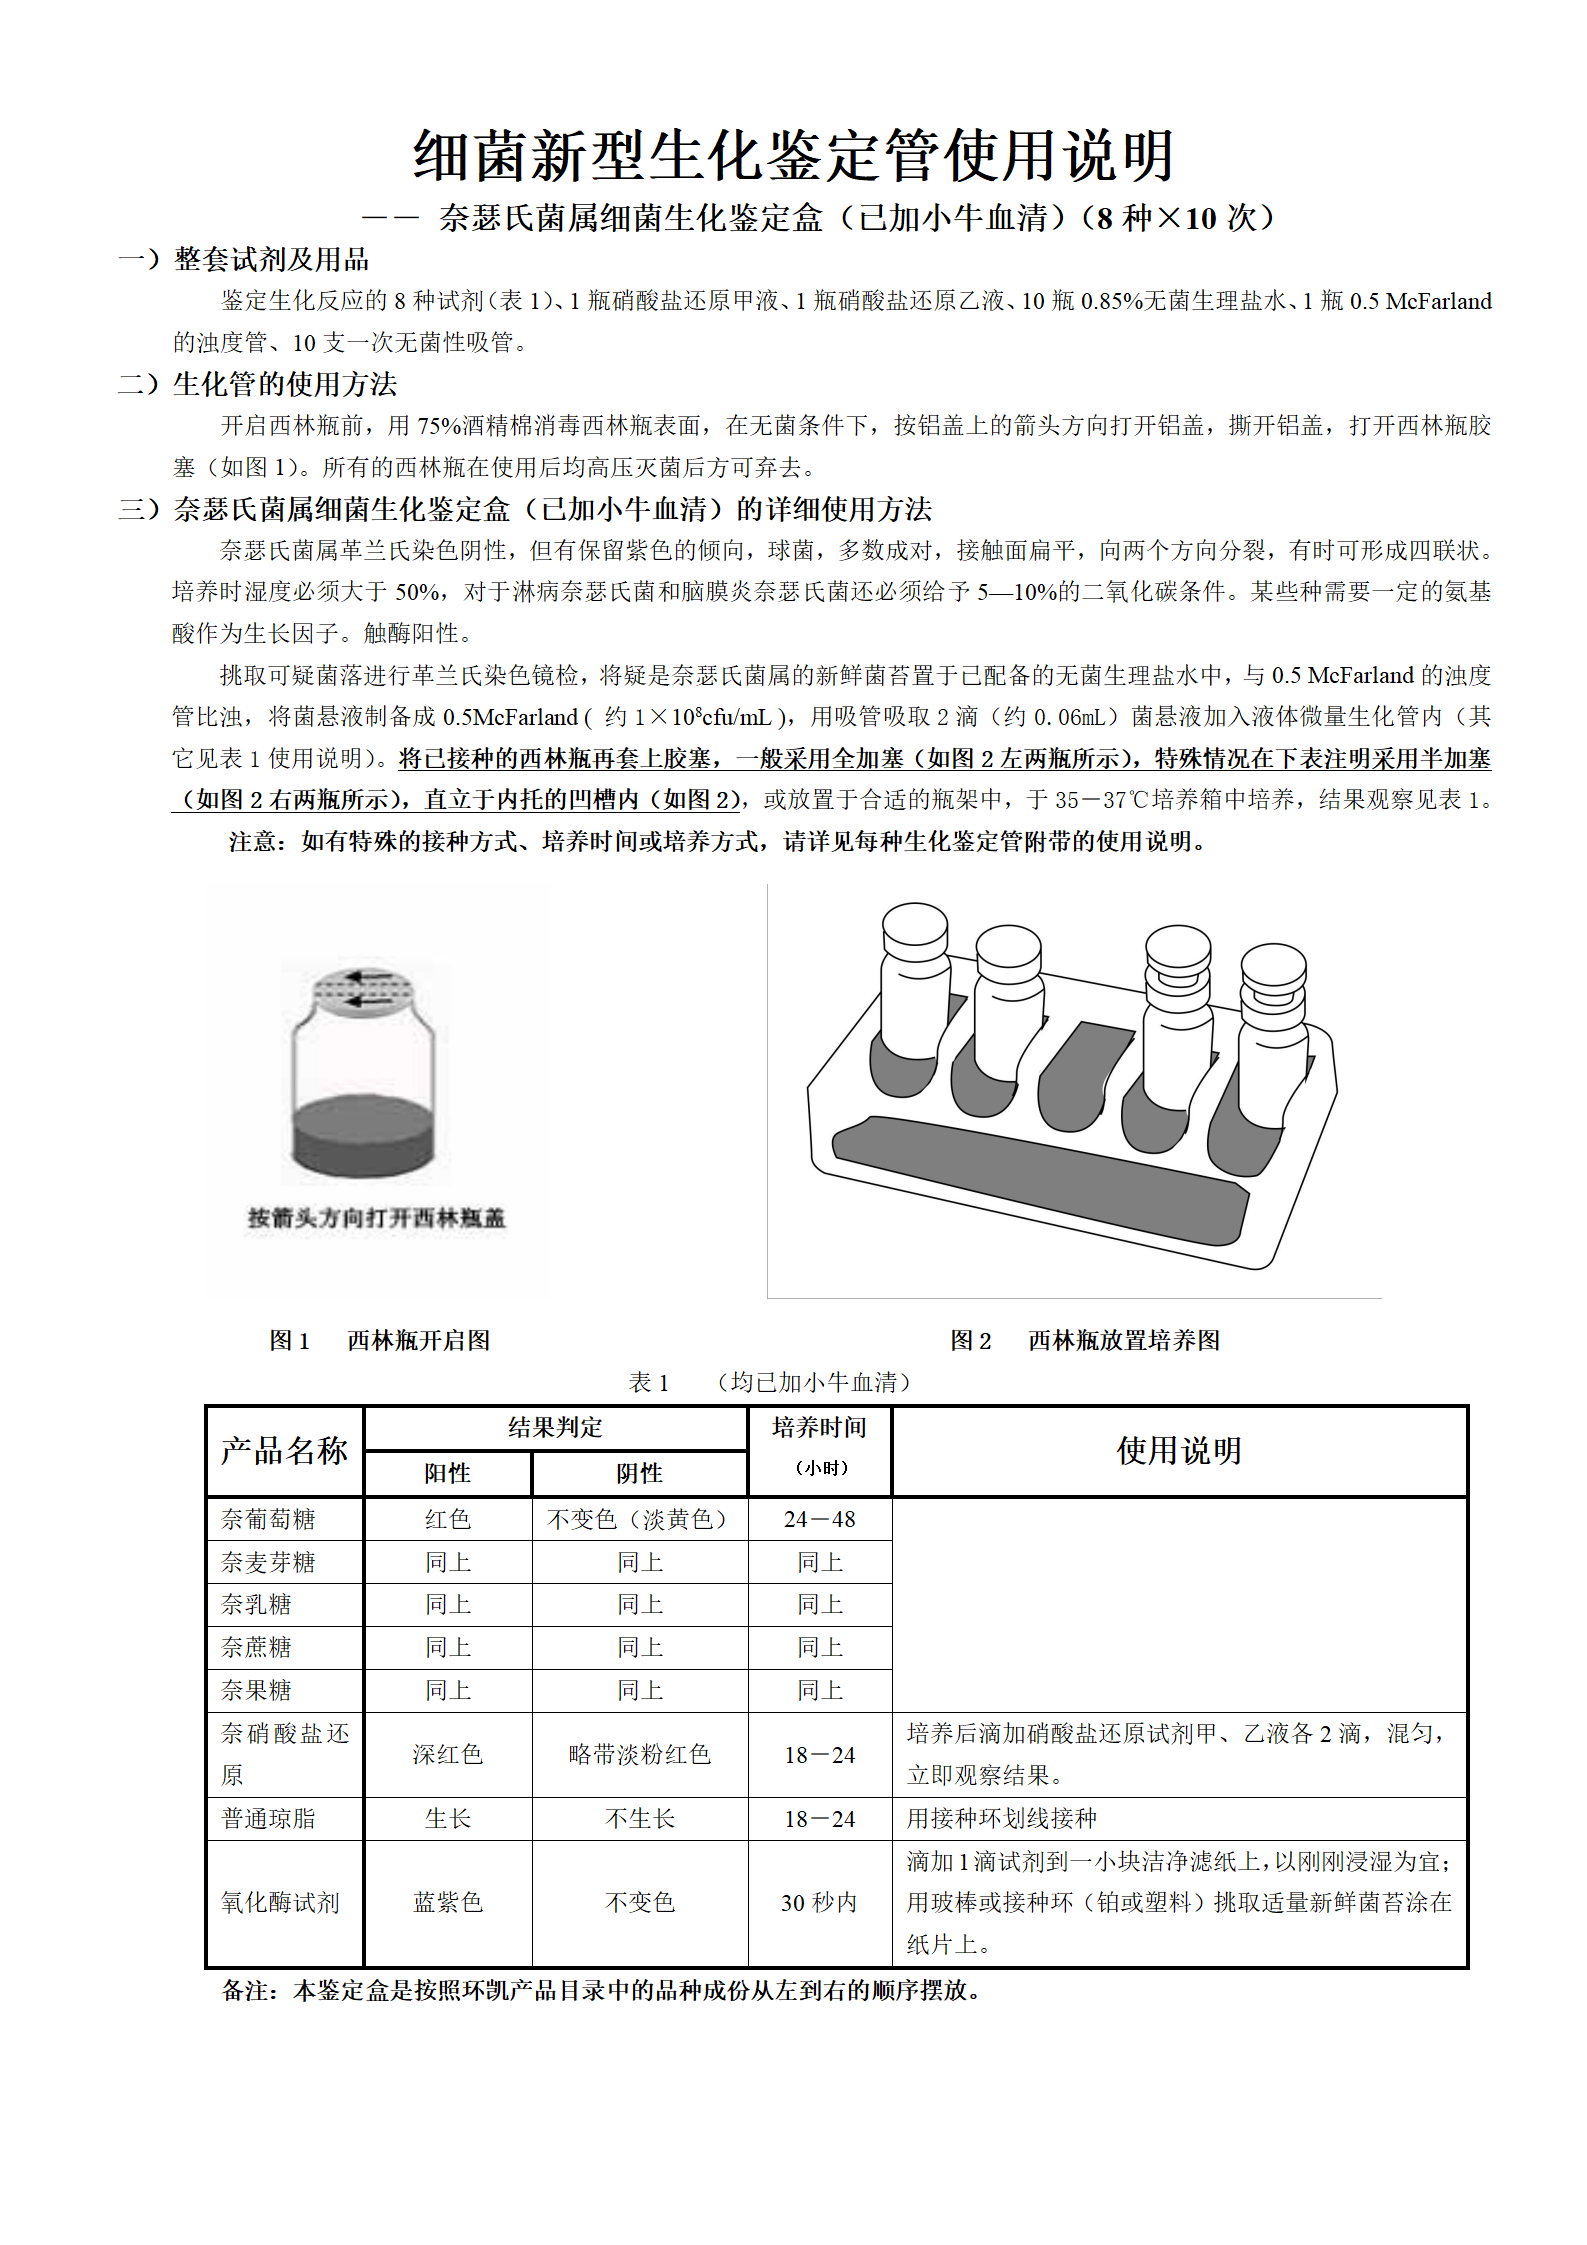 新--奈瑟氏菌属生化鉴定盒(8种×10支) 产品使用说明书